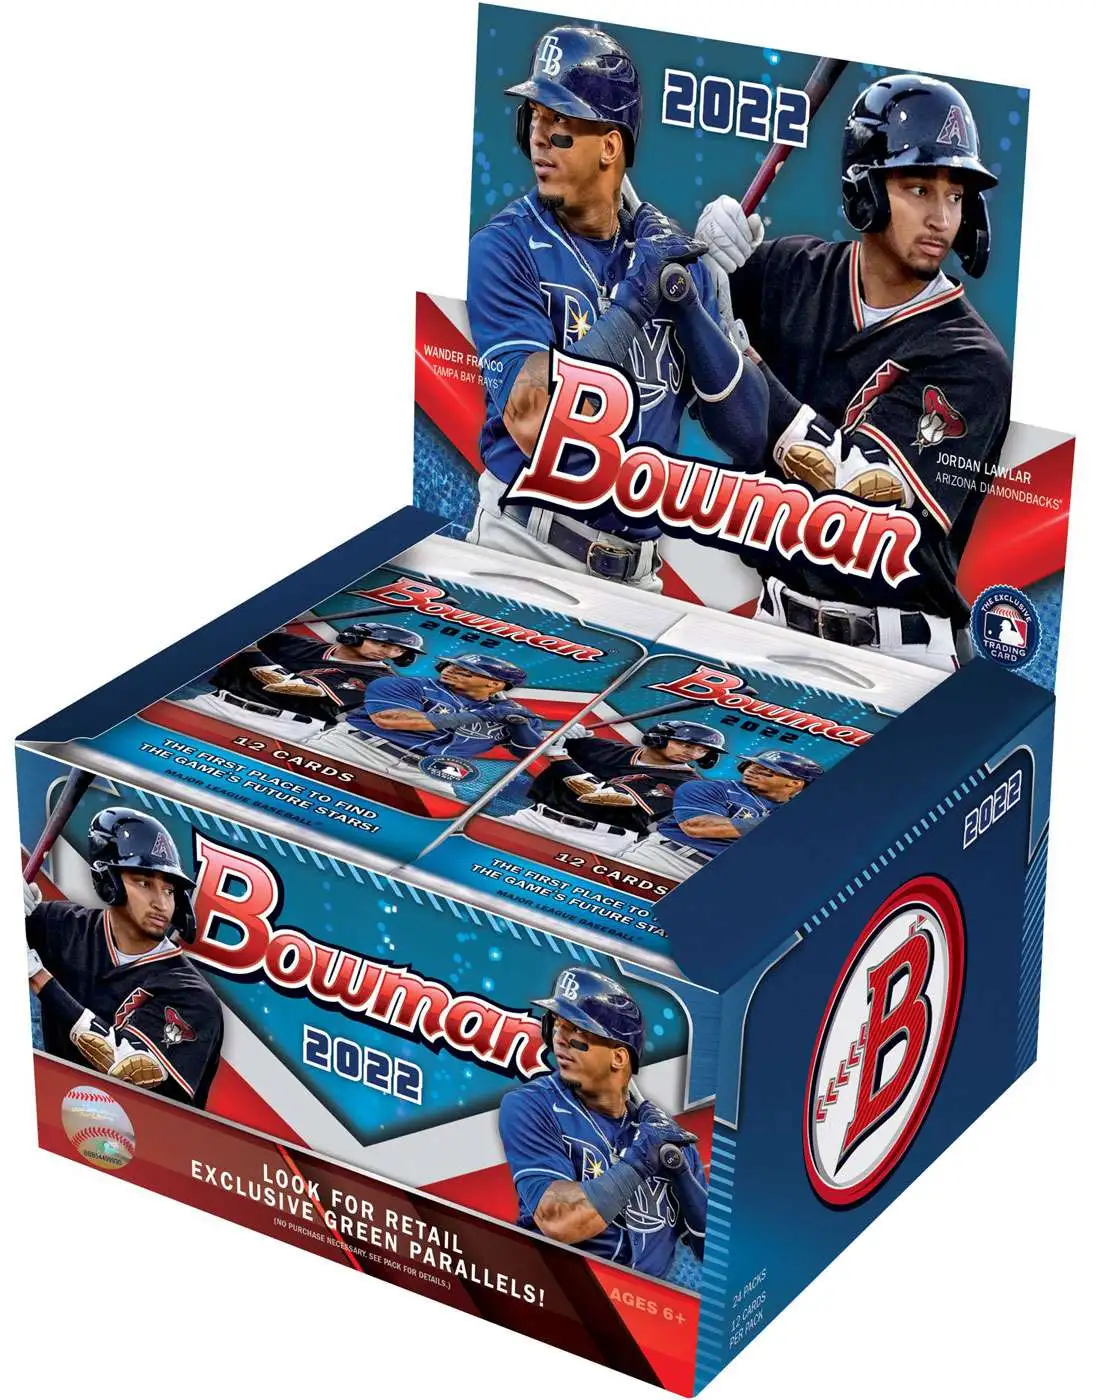 23894円 最大90%OFFクーポン Topps 2013 Bowman MLB Retailボックス